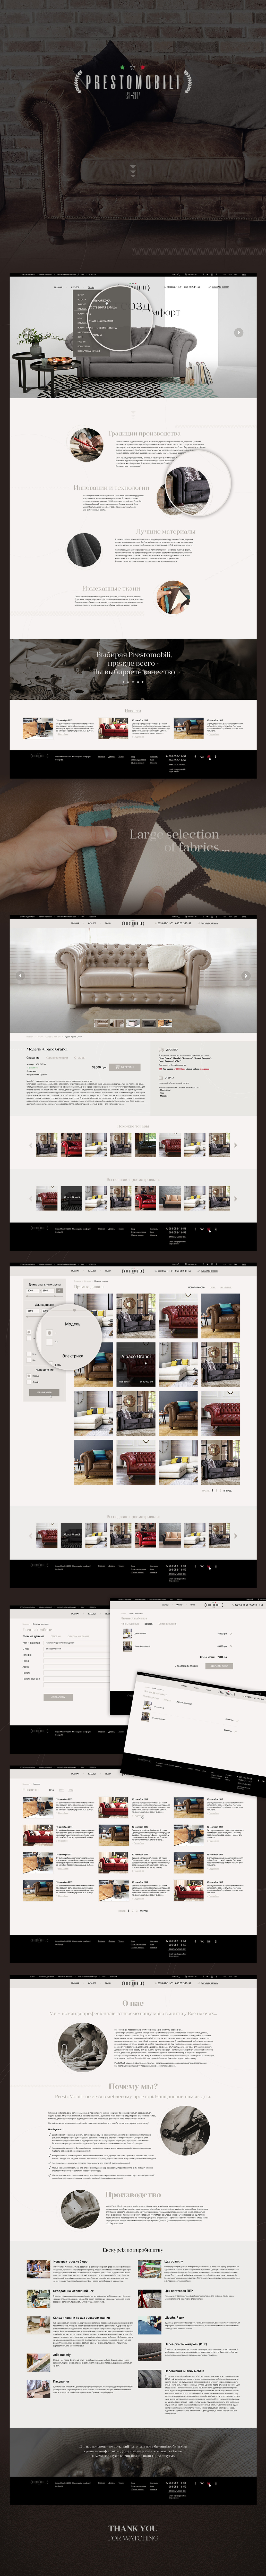 Дизайн мебель диваны мебельного производства дизайн фотошоп диван УБ Пользовательский интерфейс сайт adobephotoshop coreldraw